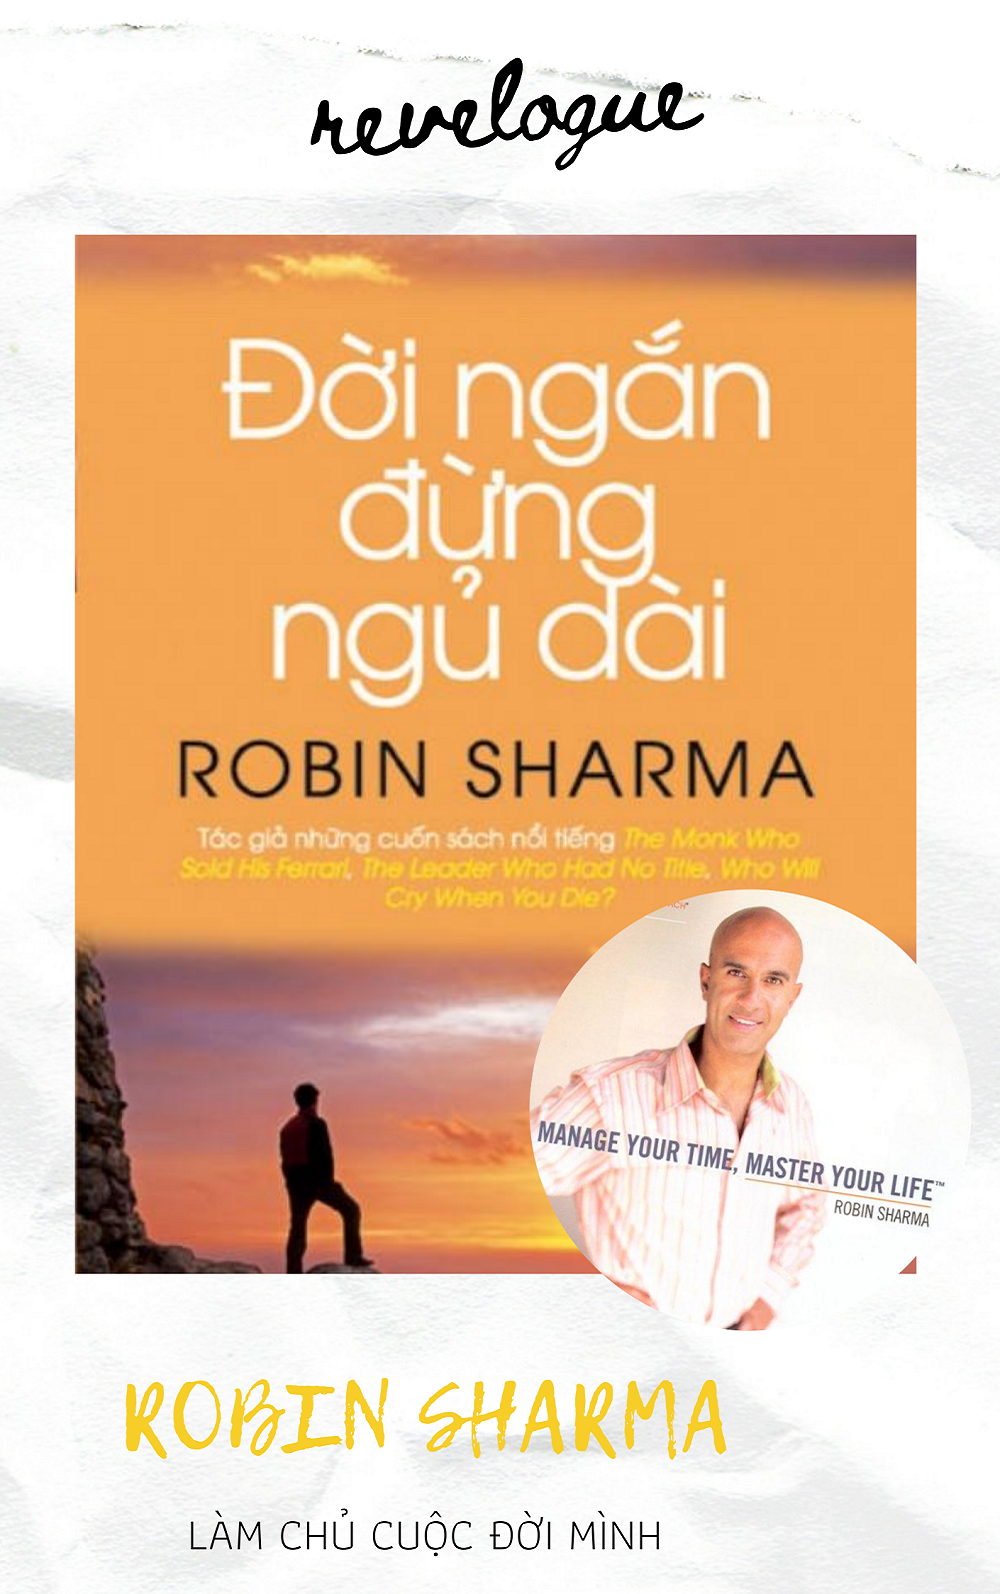 ROBIN SHARMA - Đời ngắn đừng ngủ dài: Đánh thức con người thật sự trong bạn